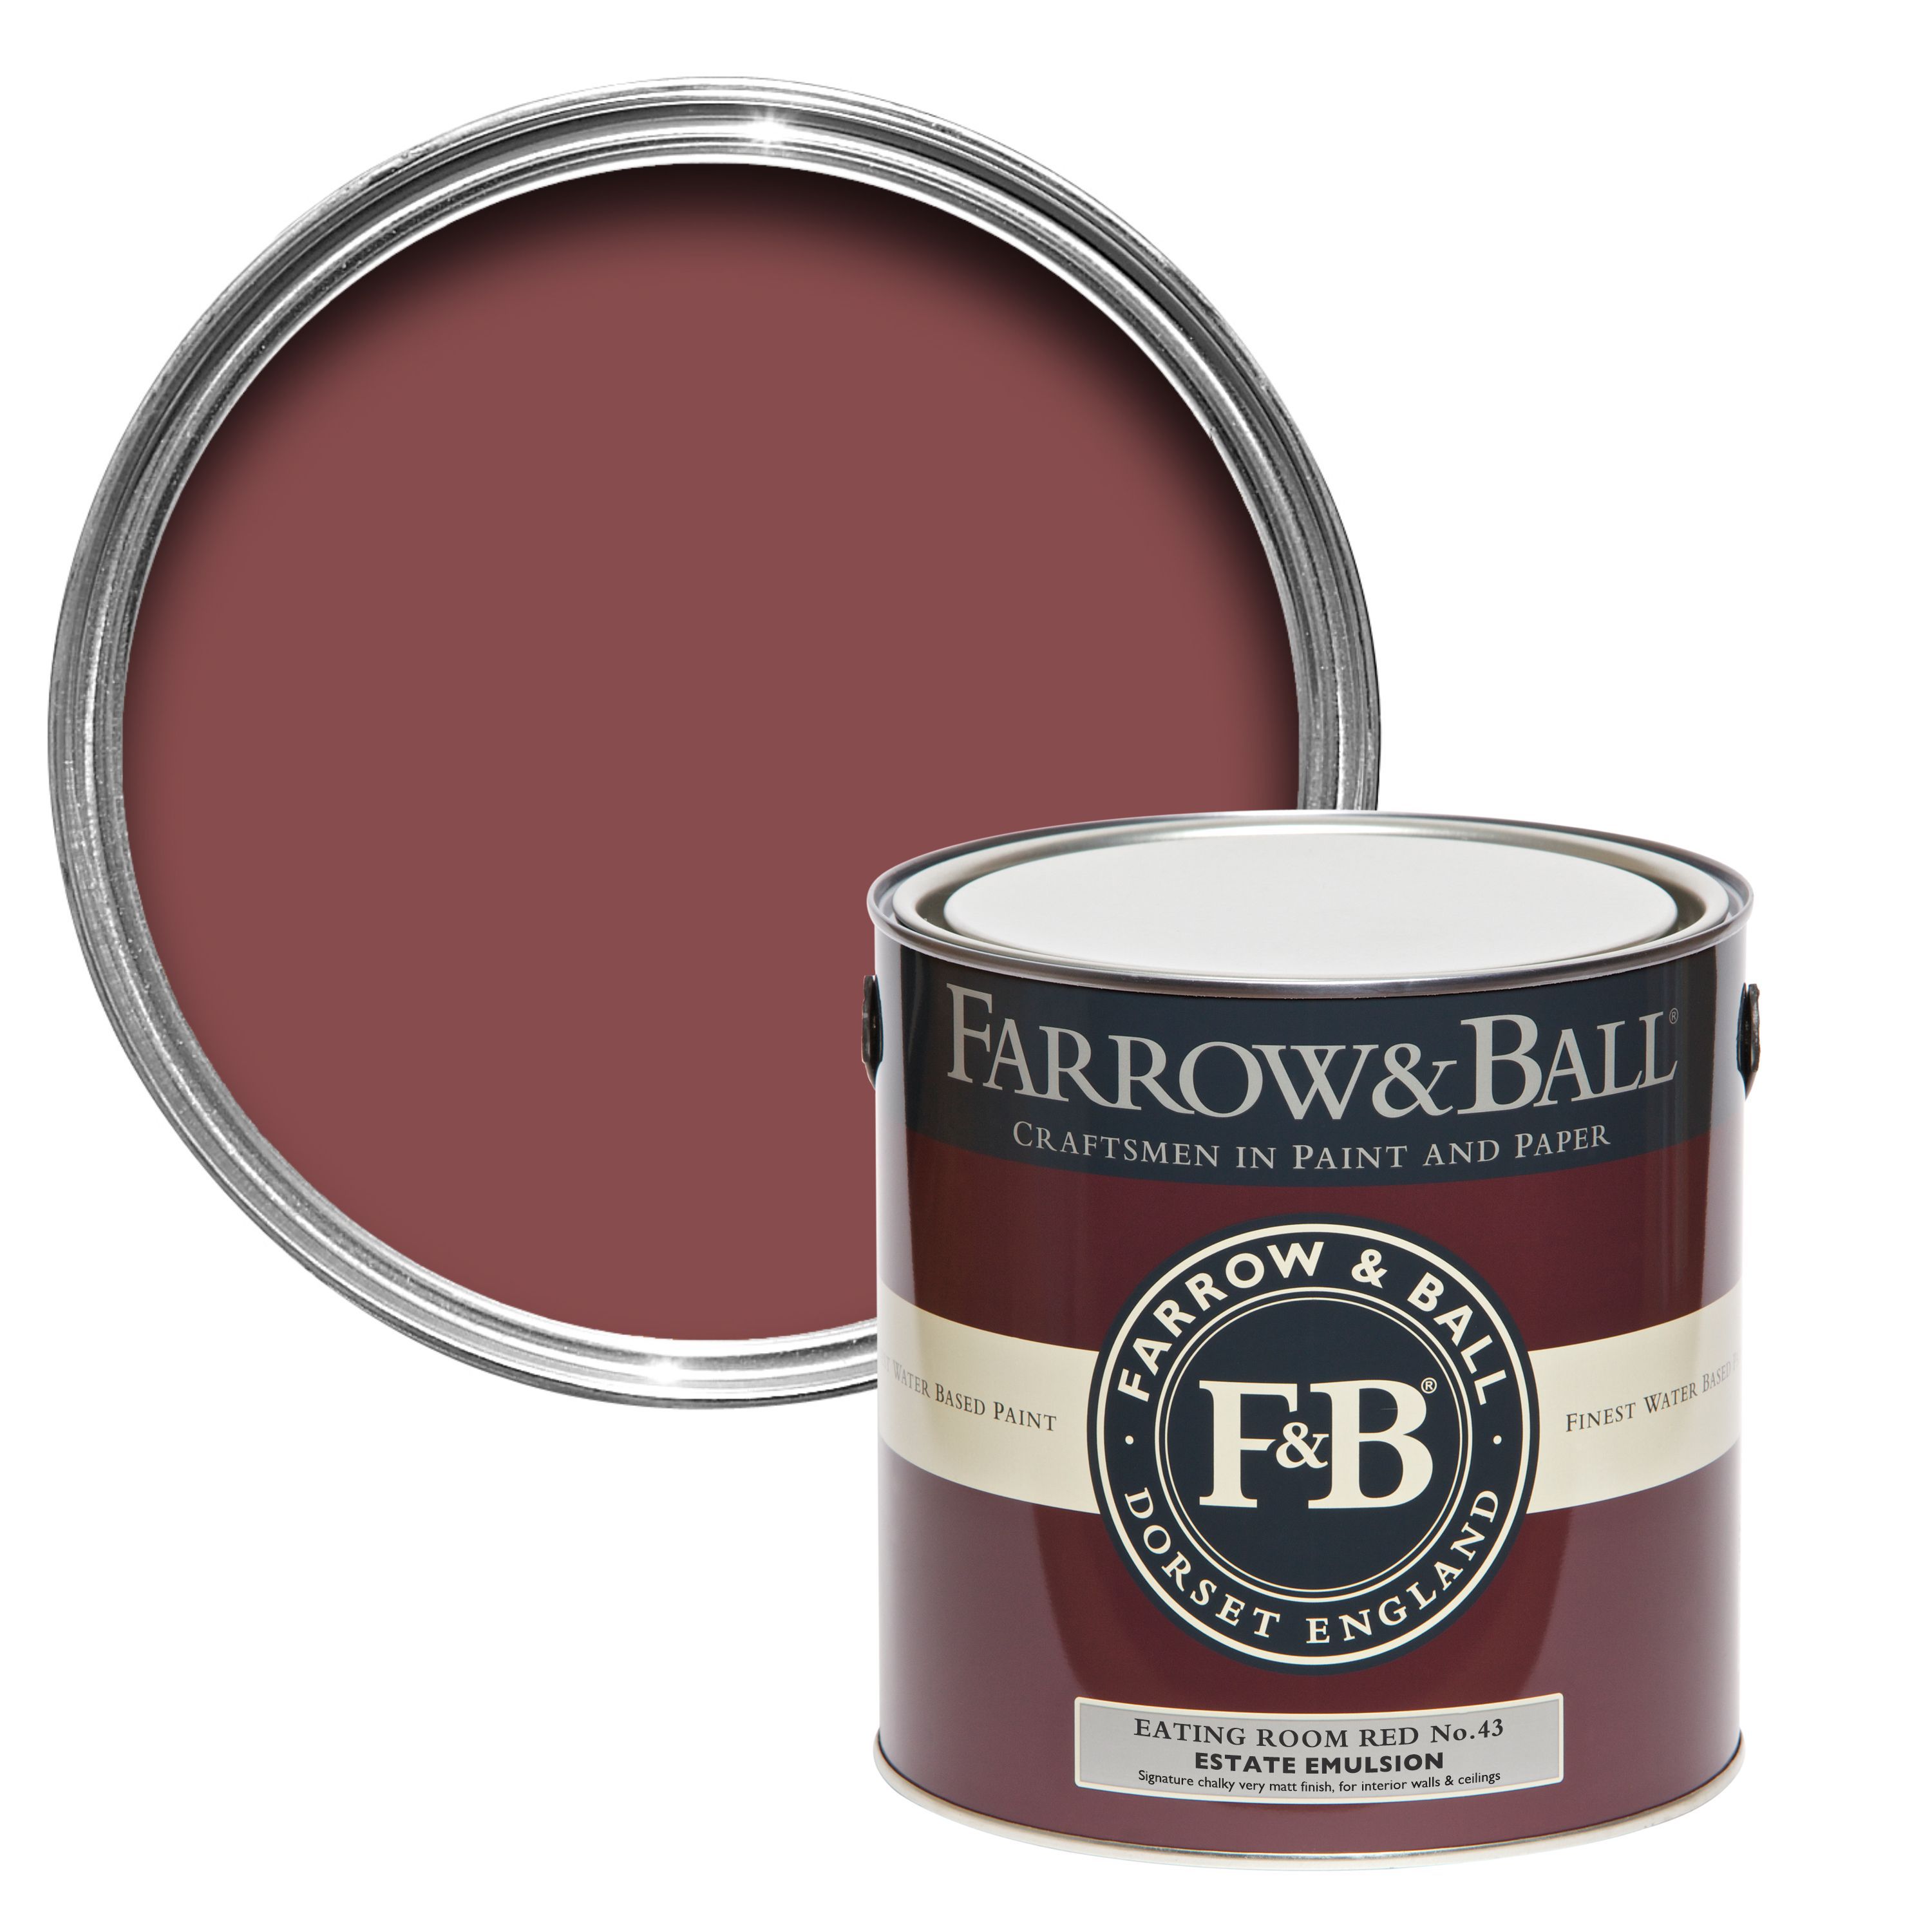 Farrow & Ball Estate Eating room red No.43 Matt Emulsion paint, 2.5L